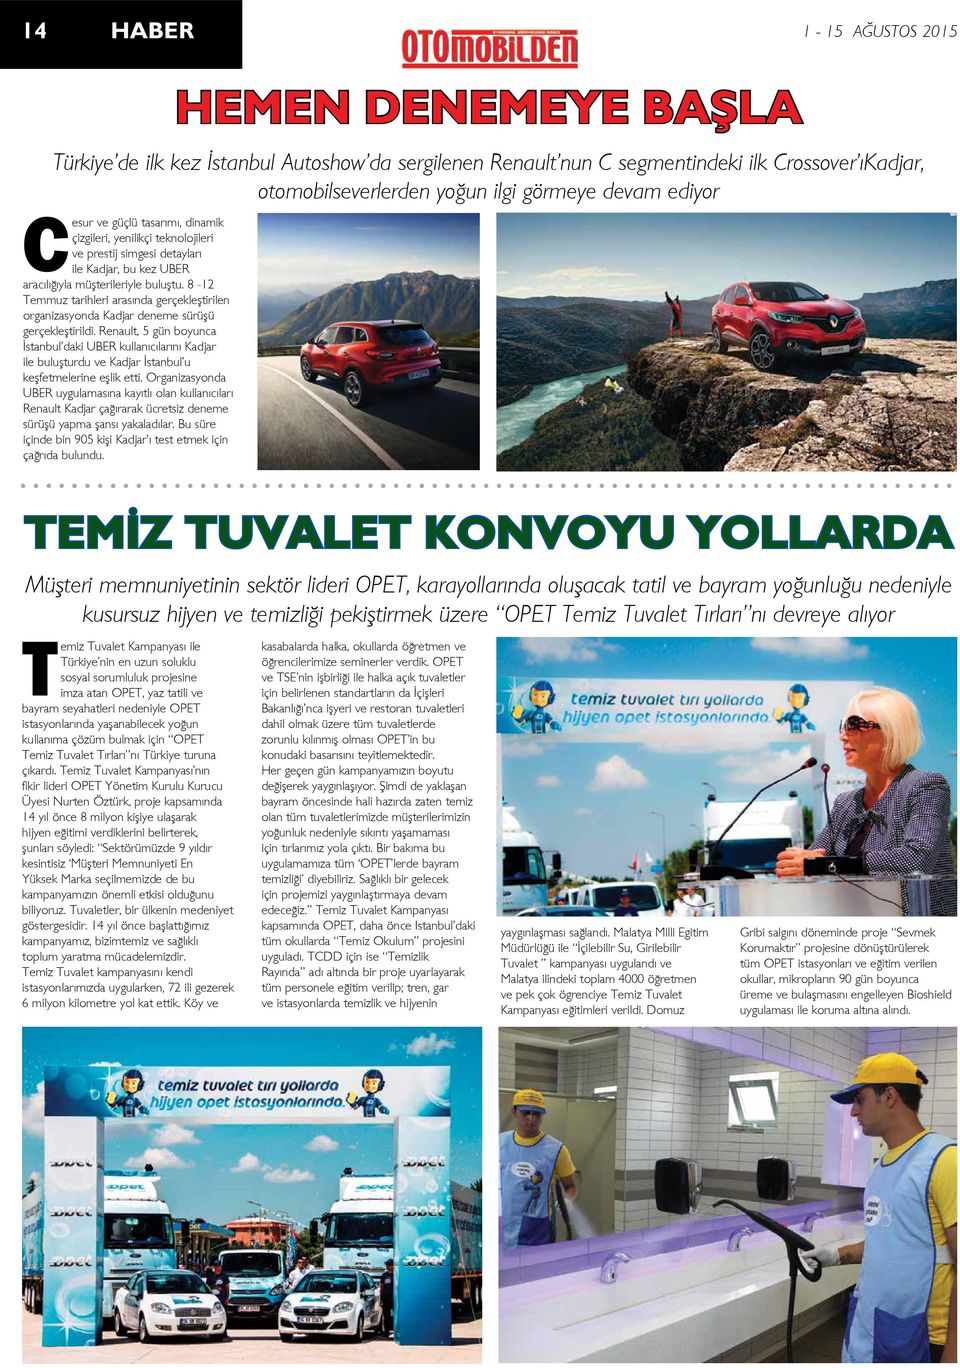 Renault, 5 gün boyunca İstanbul daki UBER kullanıcılarını Kadjar ile buluşturdu ve Kadjar İstanbul u keşfetmelerine eşlik etti.